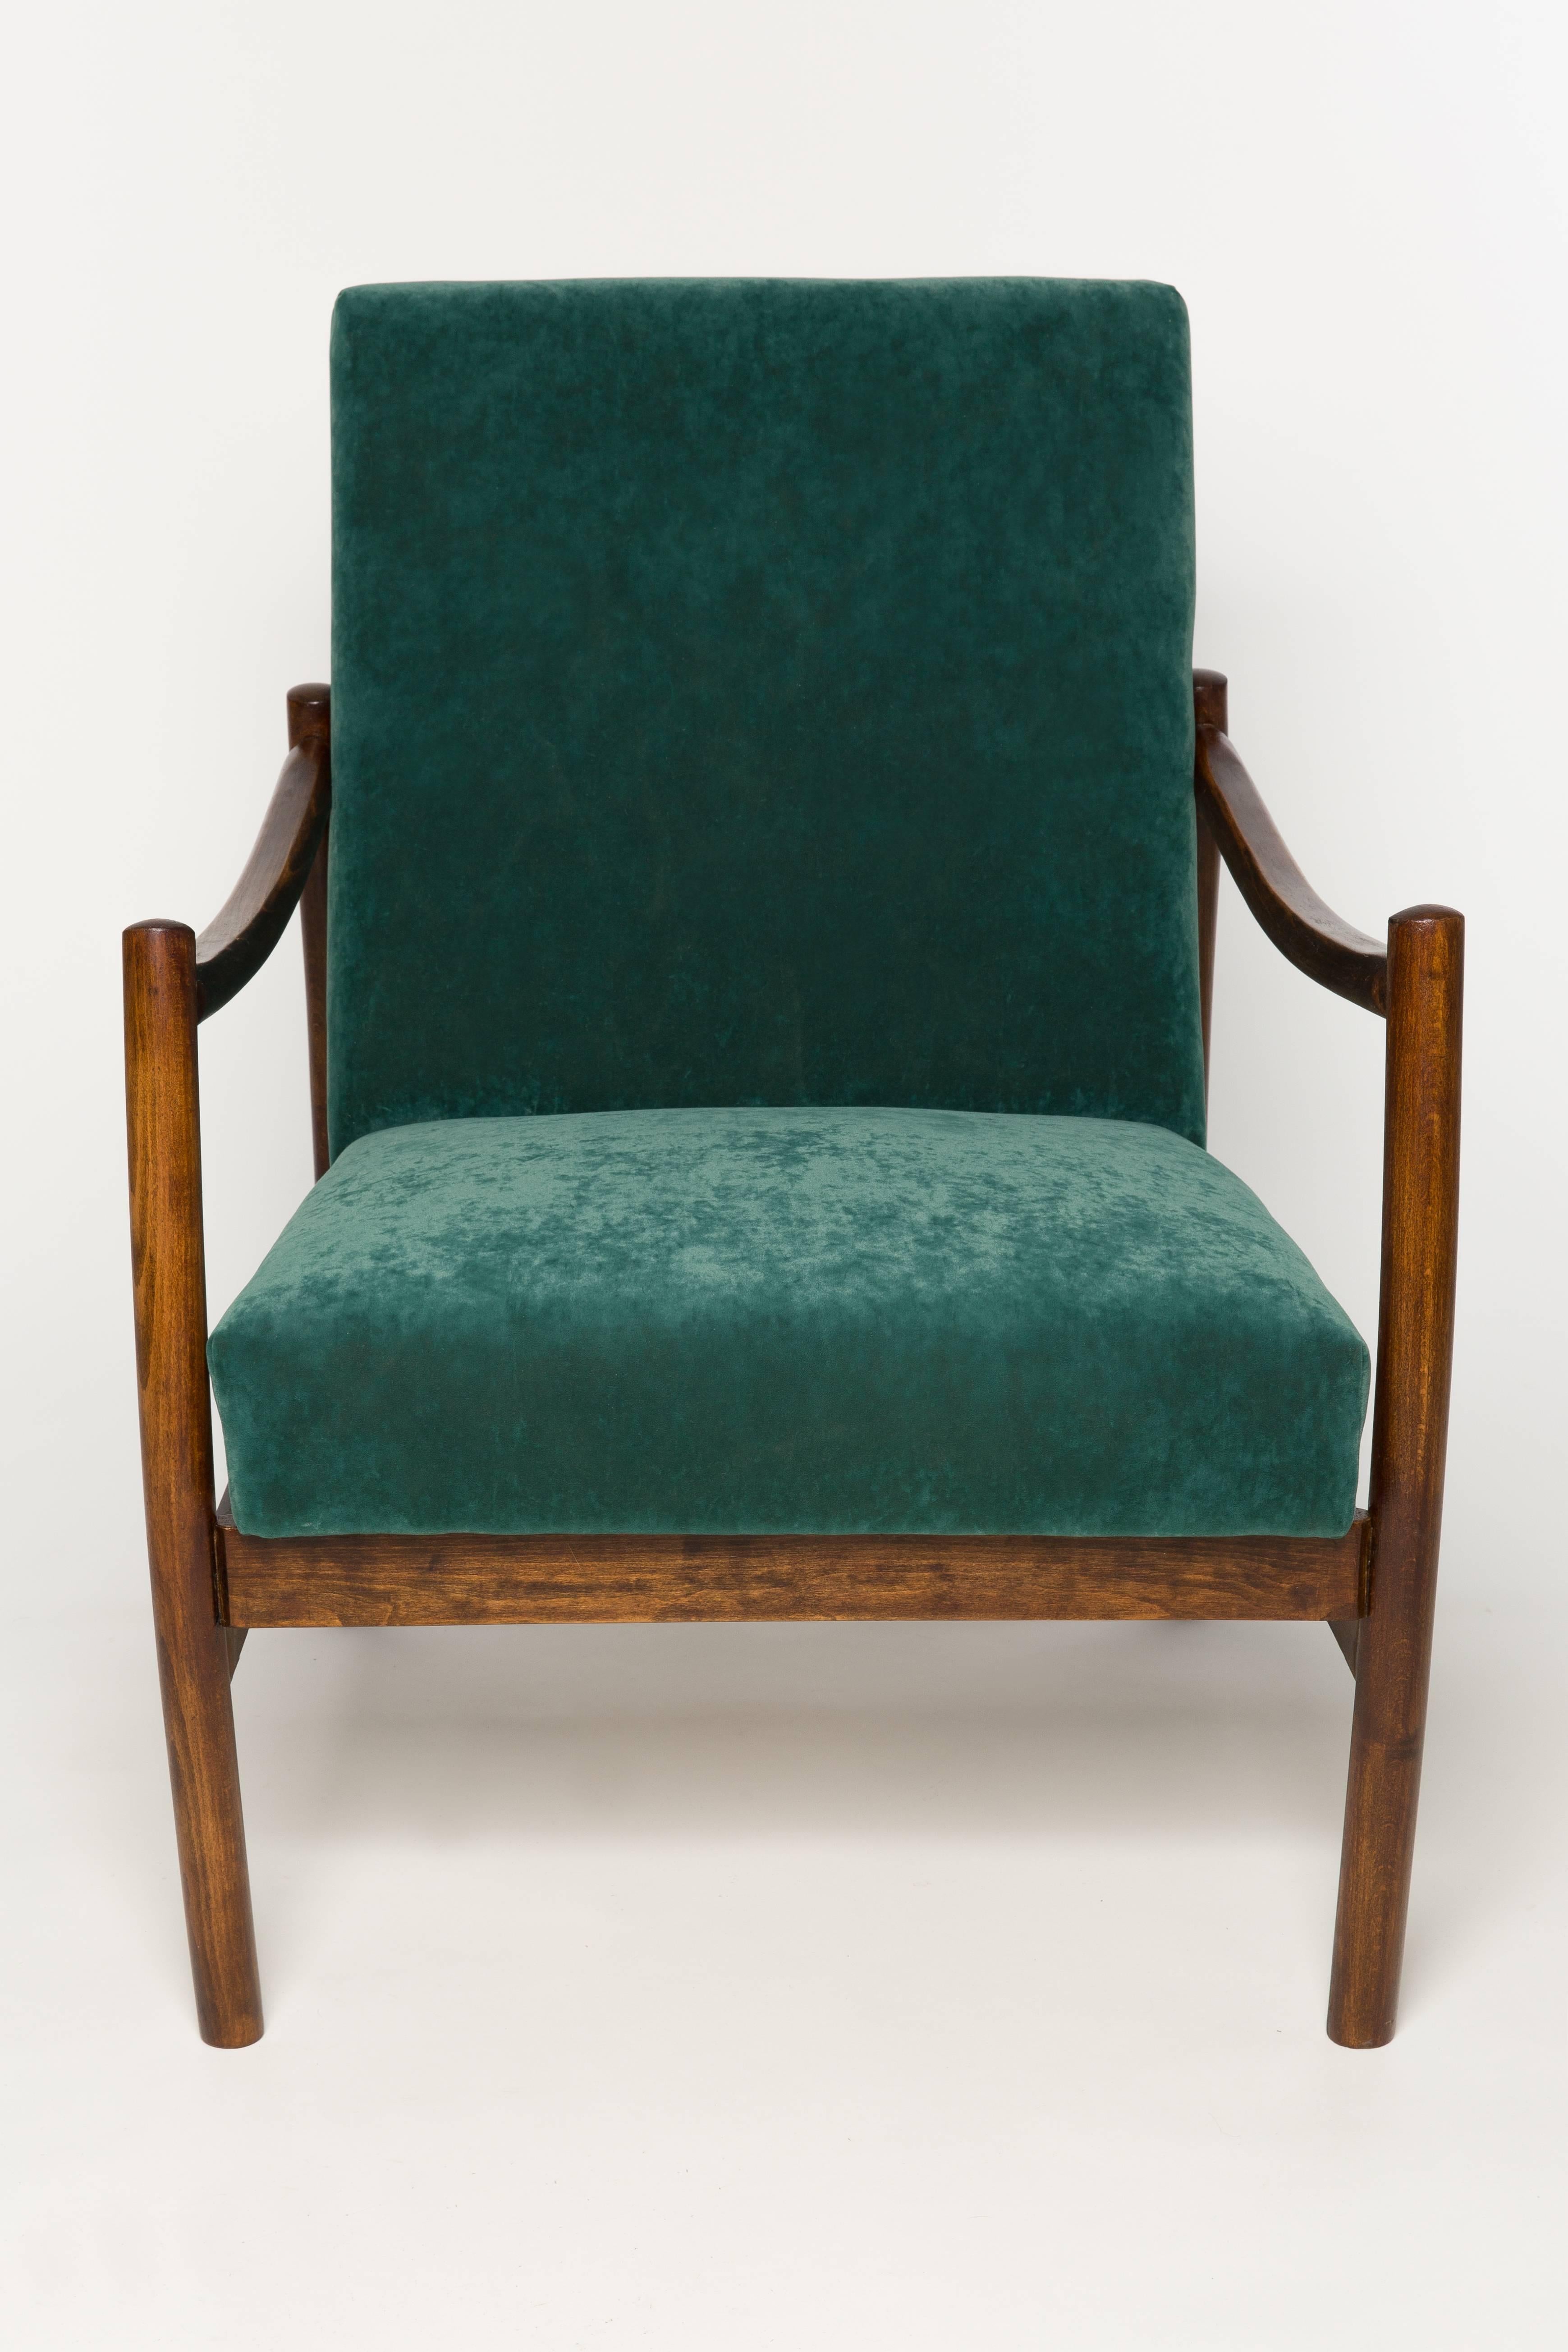 In den 1960er Jahren von den Möbelfabriken Radom hergestellte Sessel. Sehr bequemer Sitz mit hochwertigem Stoffbezug. Die Sessel sind vollständig getischlert und gepolstert. Wir können auch andere Farbvarianten von Stoffen vorbereiten. Bitte sehen